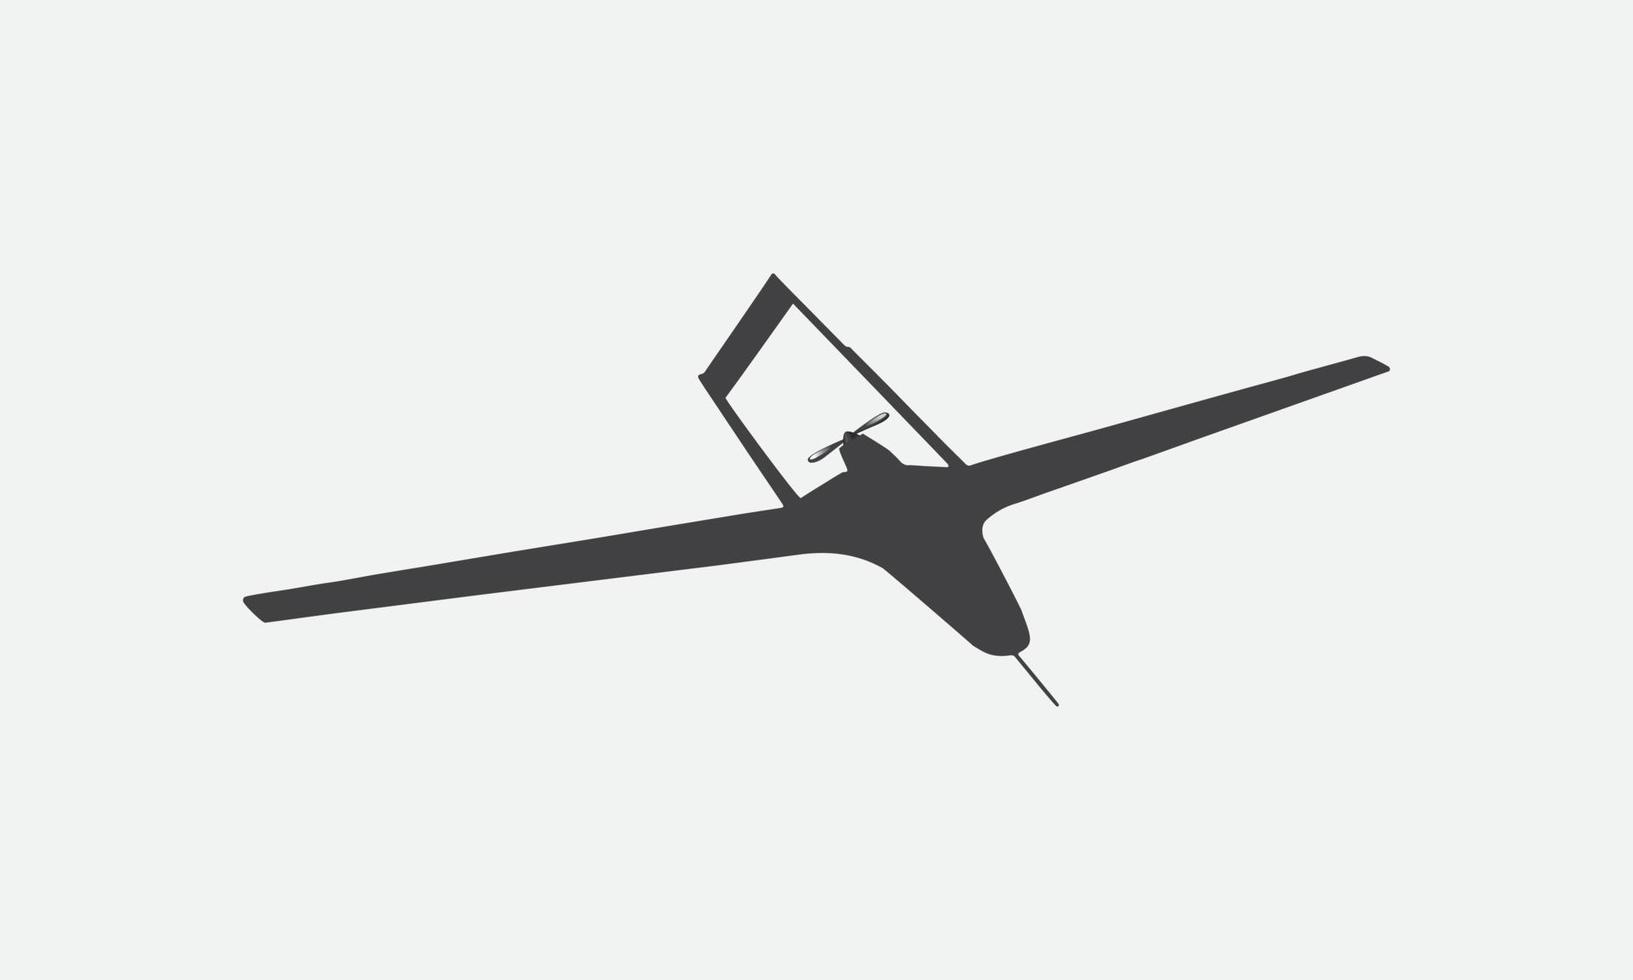 vecteur de silhouette siha de véhicule aérien sans pilote bayraktar tb2 sur fond blanc. dessin vectoriel d'un véhicule aérien de combat sans pilote. vue de côté. image pour illustration et infographie.